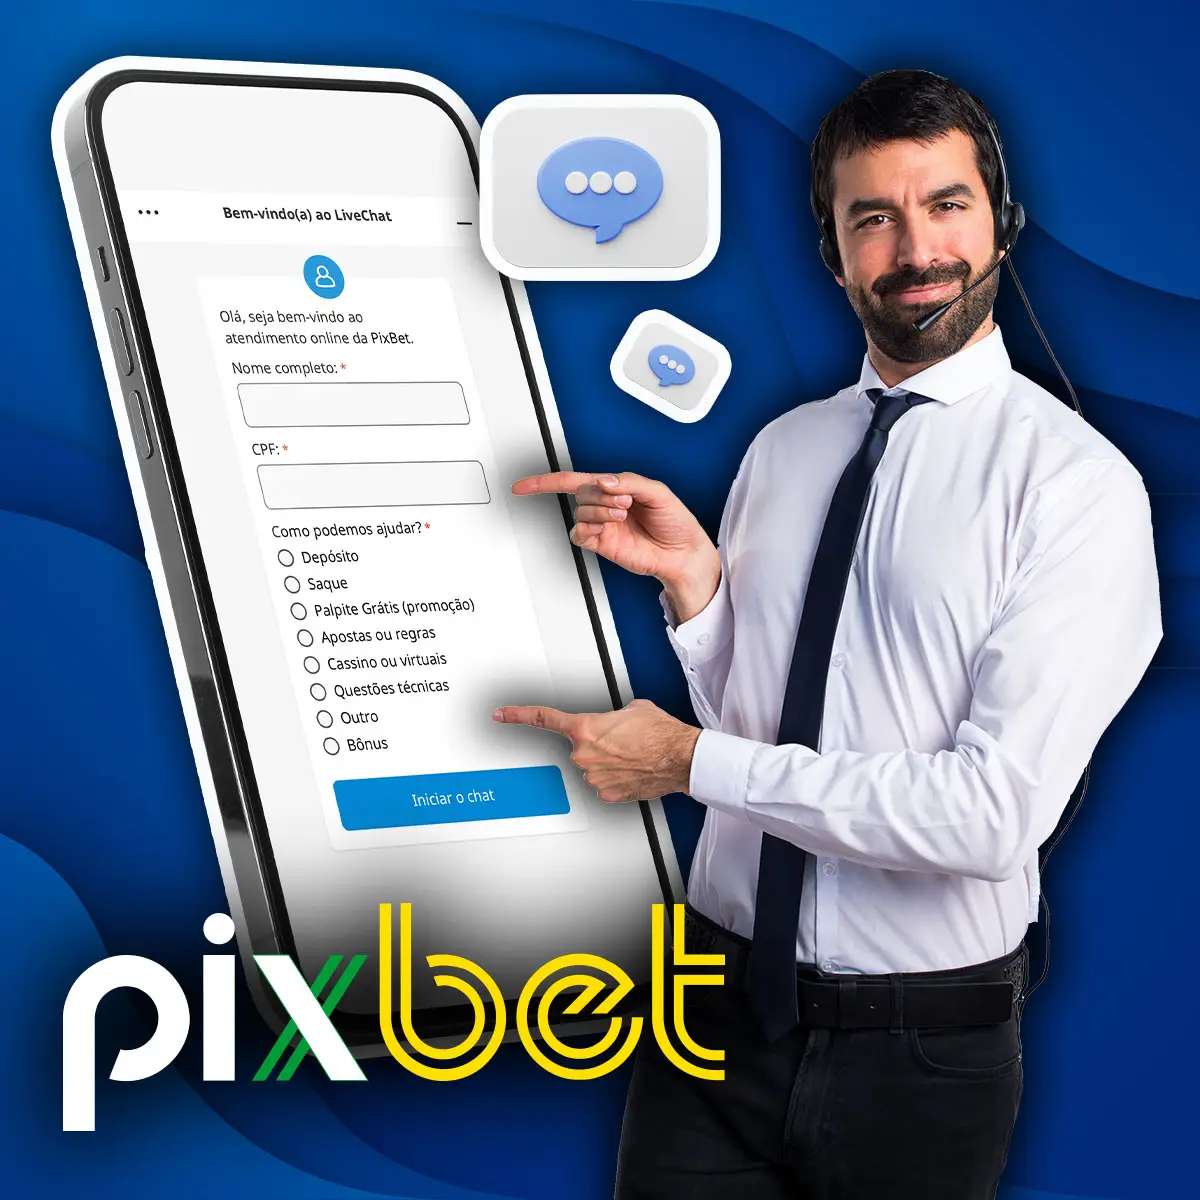 Suporte 24/7 para usuários do aplicativo móvel Pixbet no Brasil